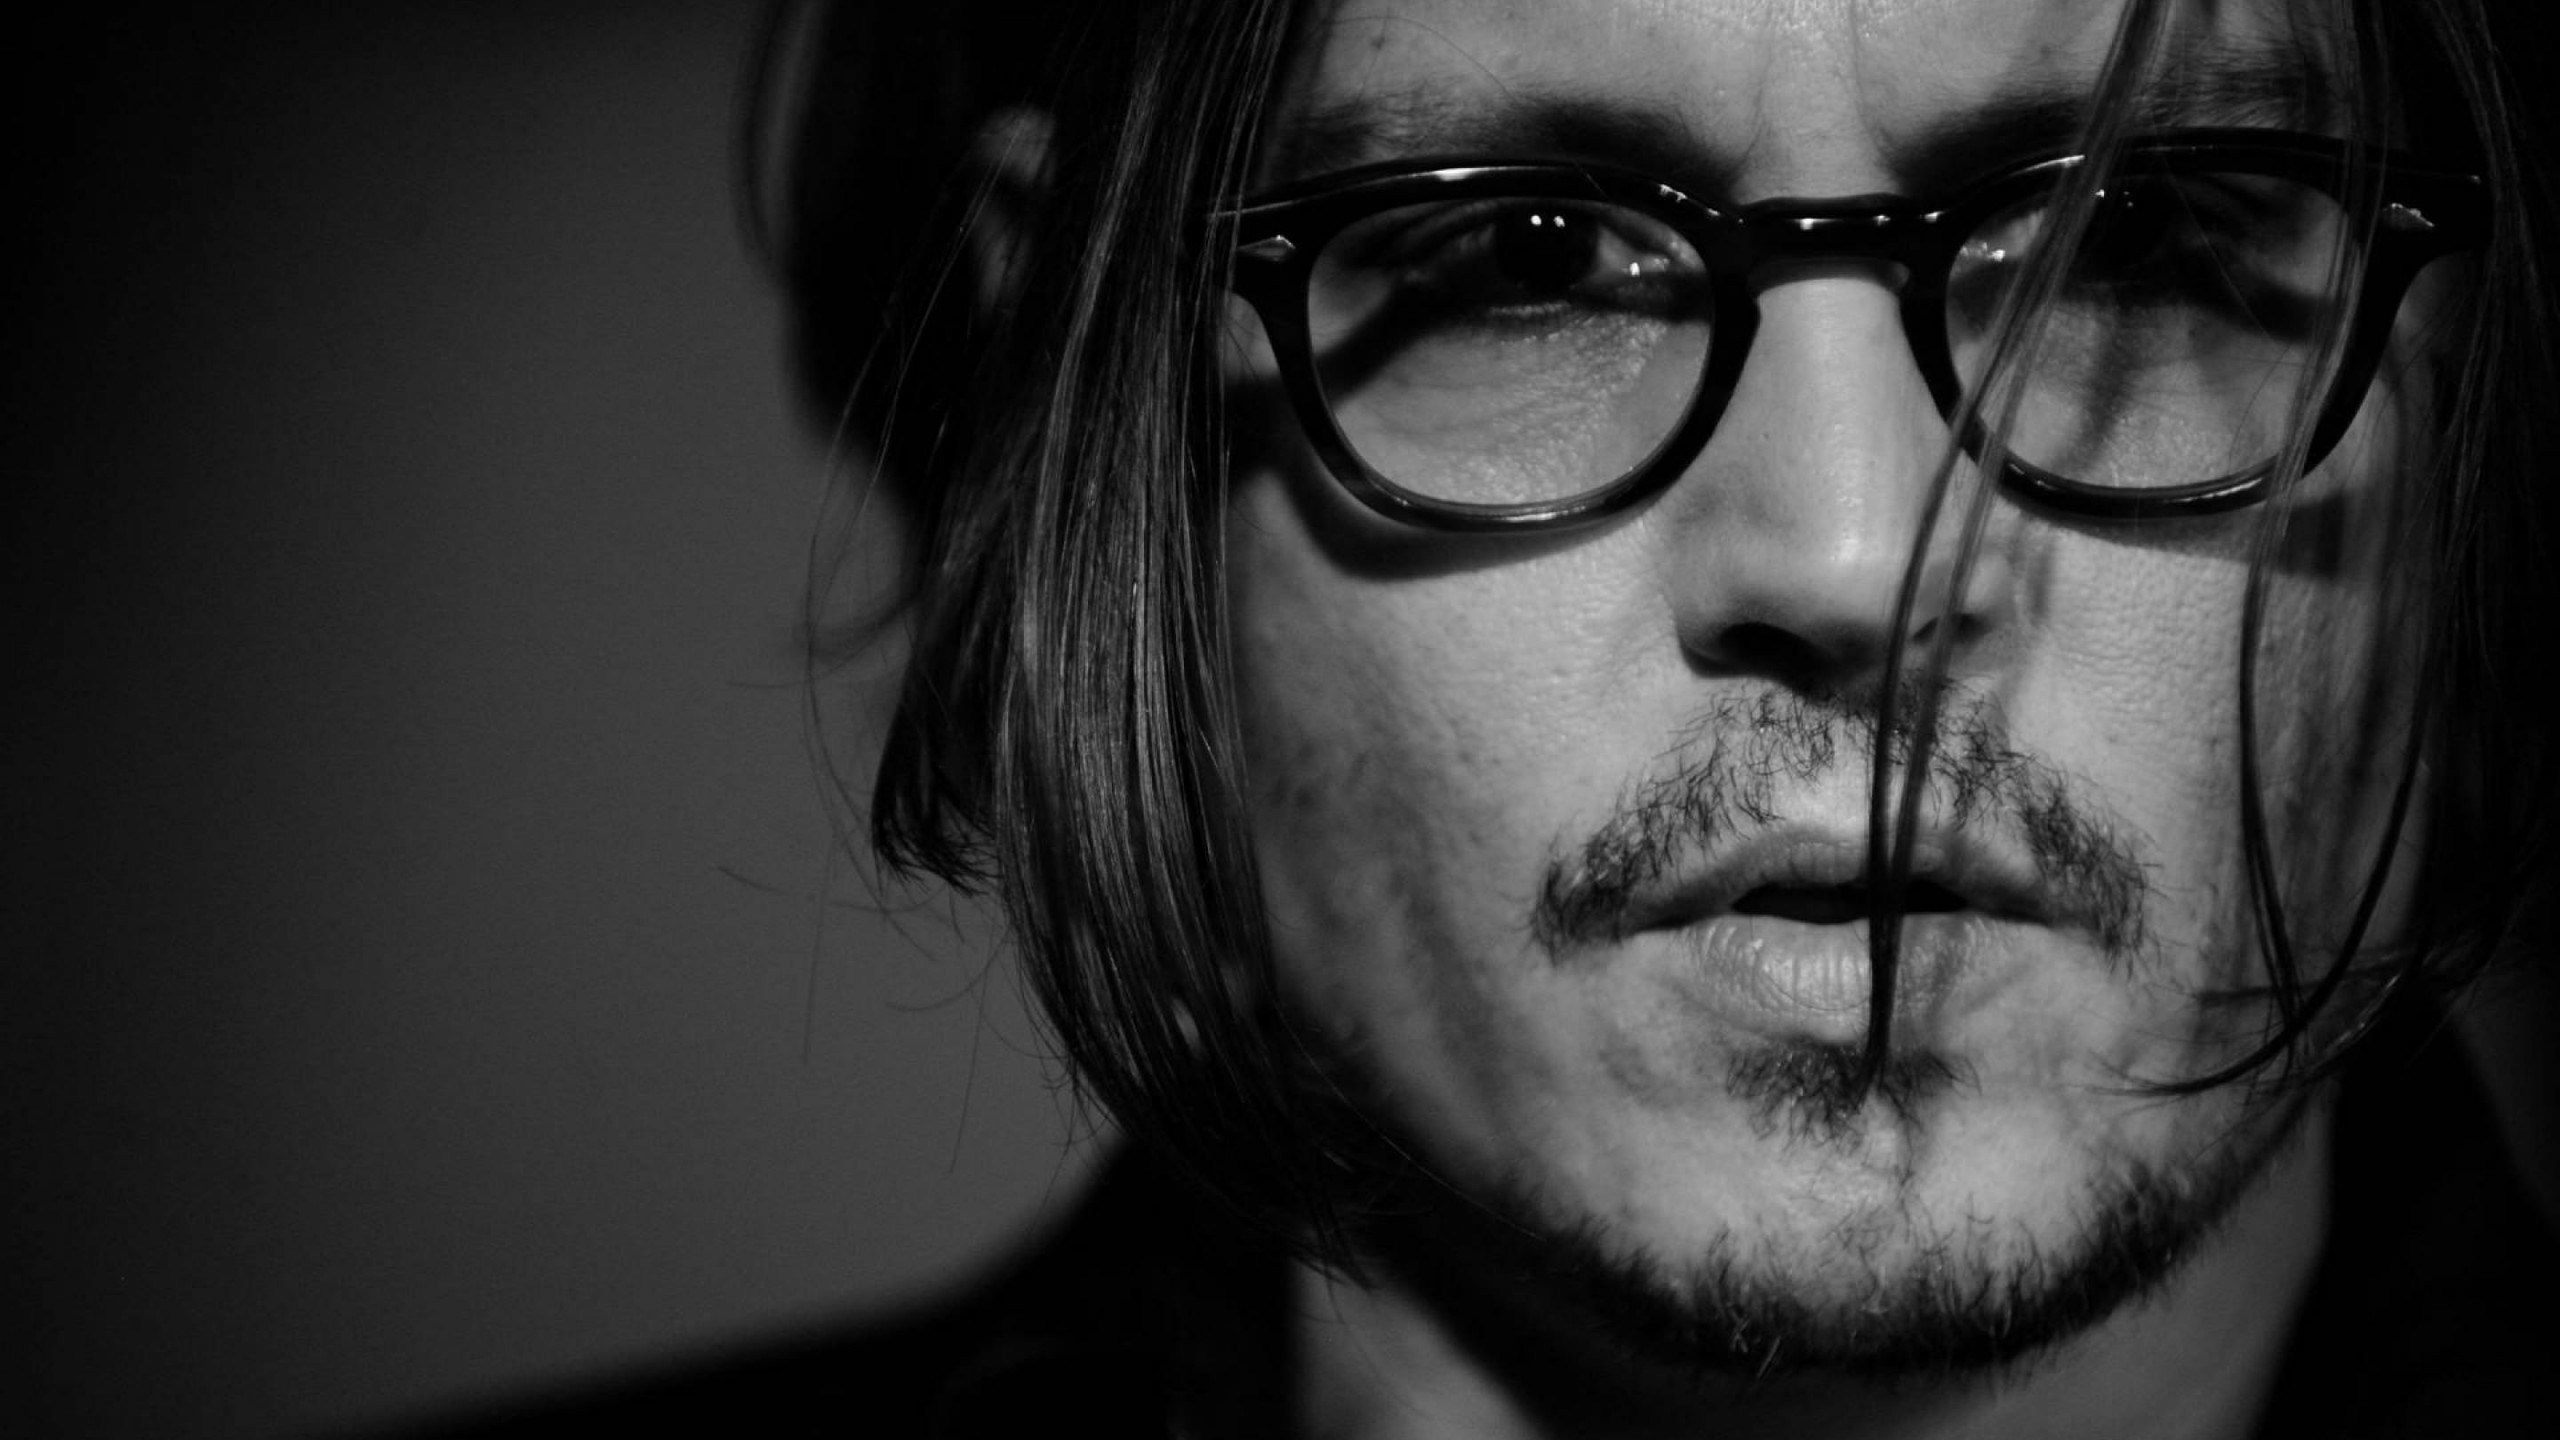 Johnny Depp Black & White Portrait Wallpaper for Social Media YouTube Channel Art